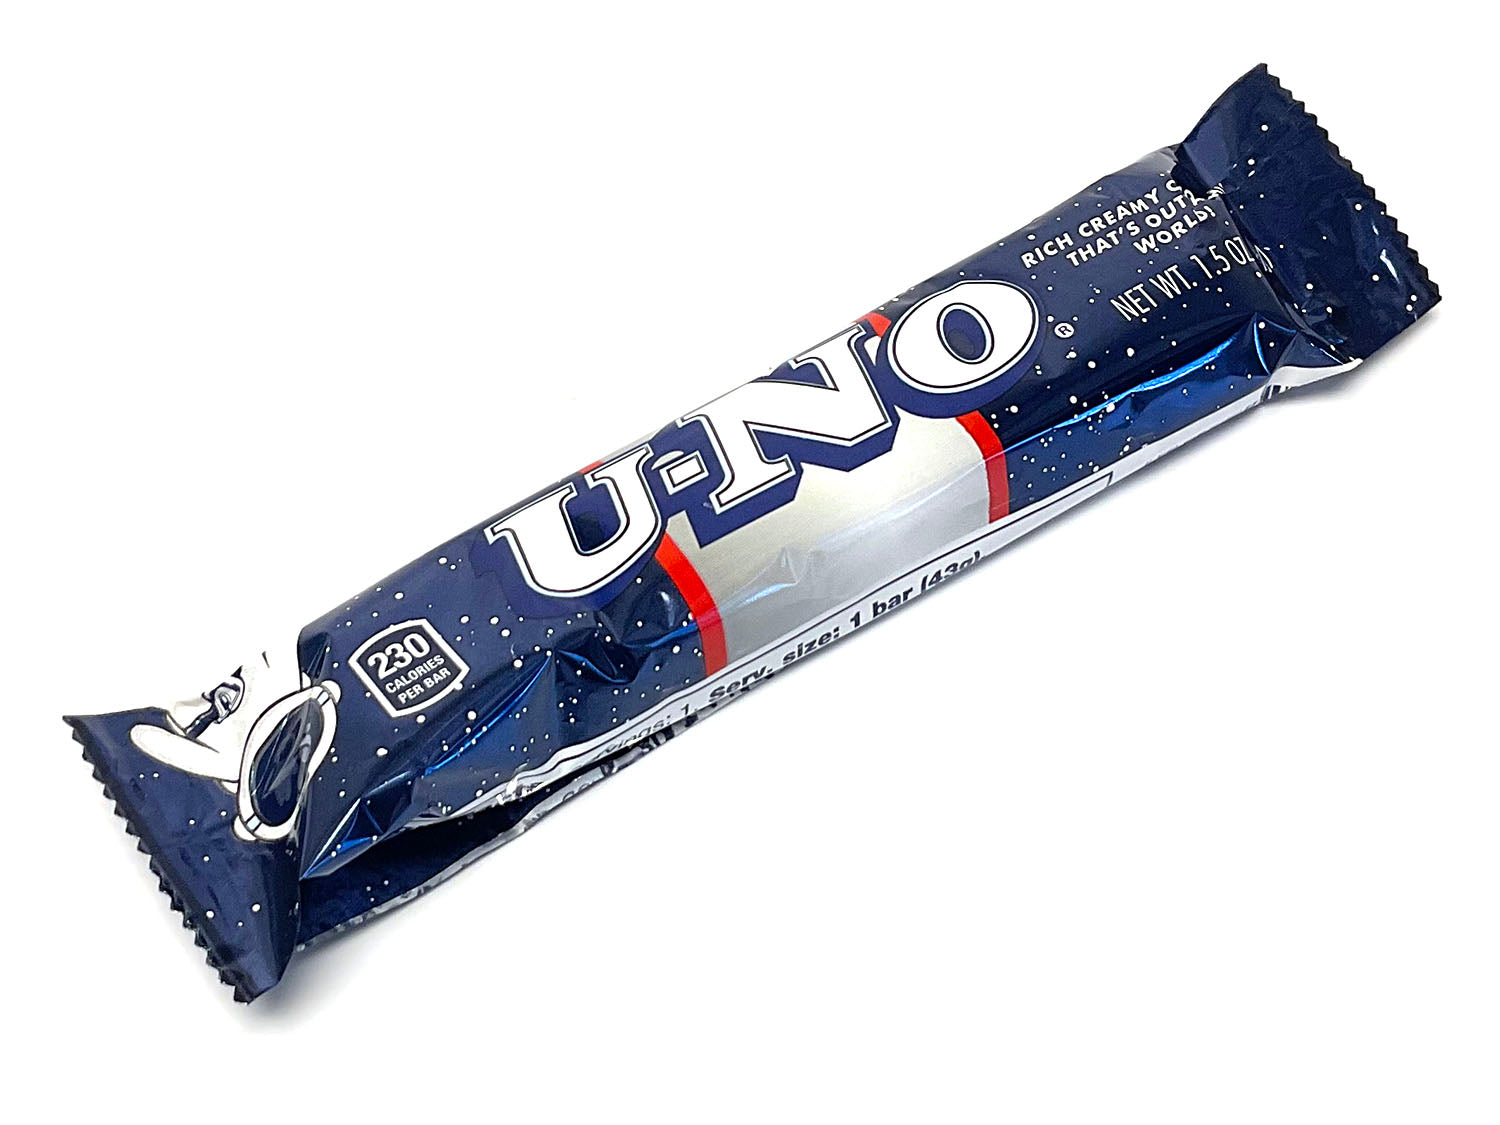 U-No - 1.5 oz bar